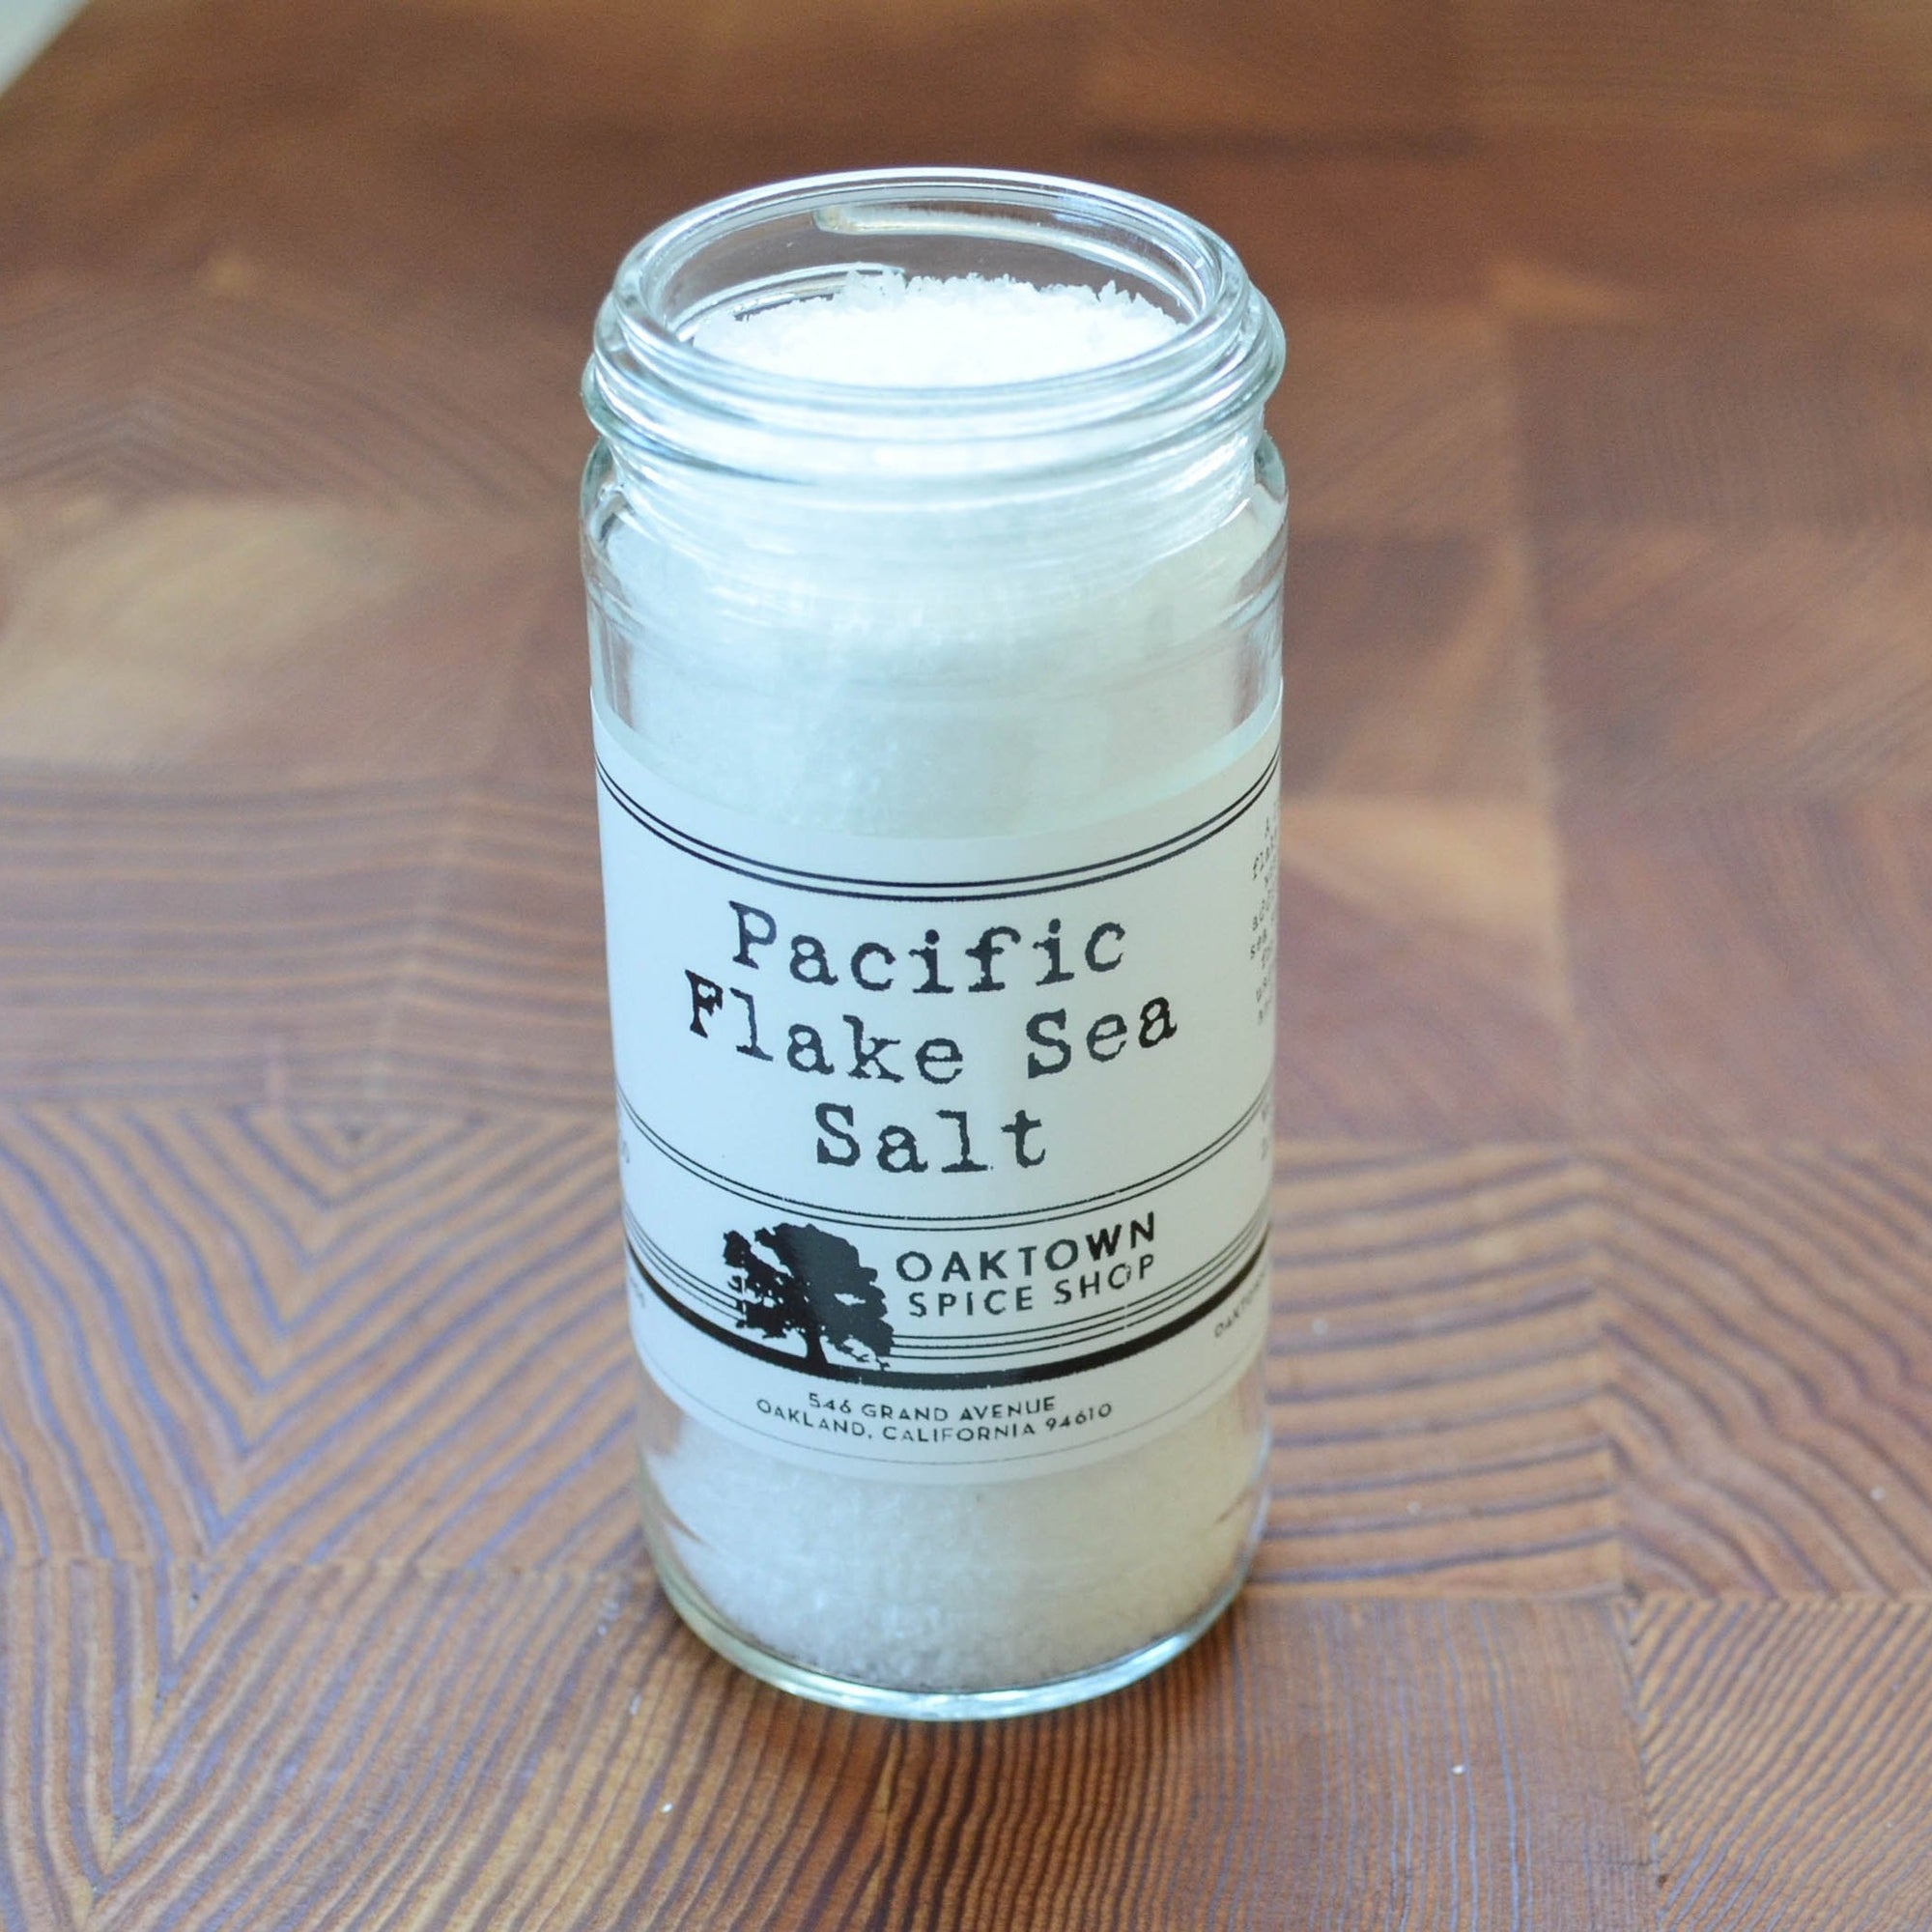 Pacific Flake Sea Salt